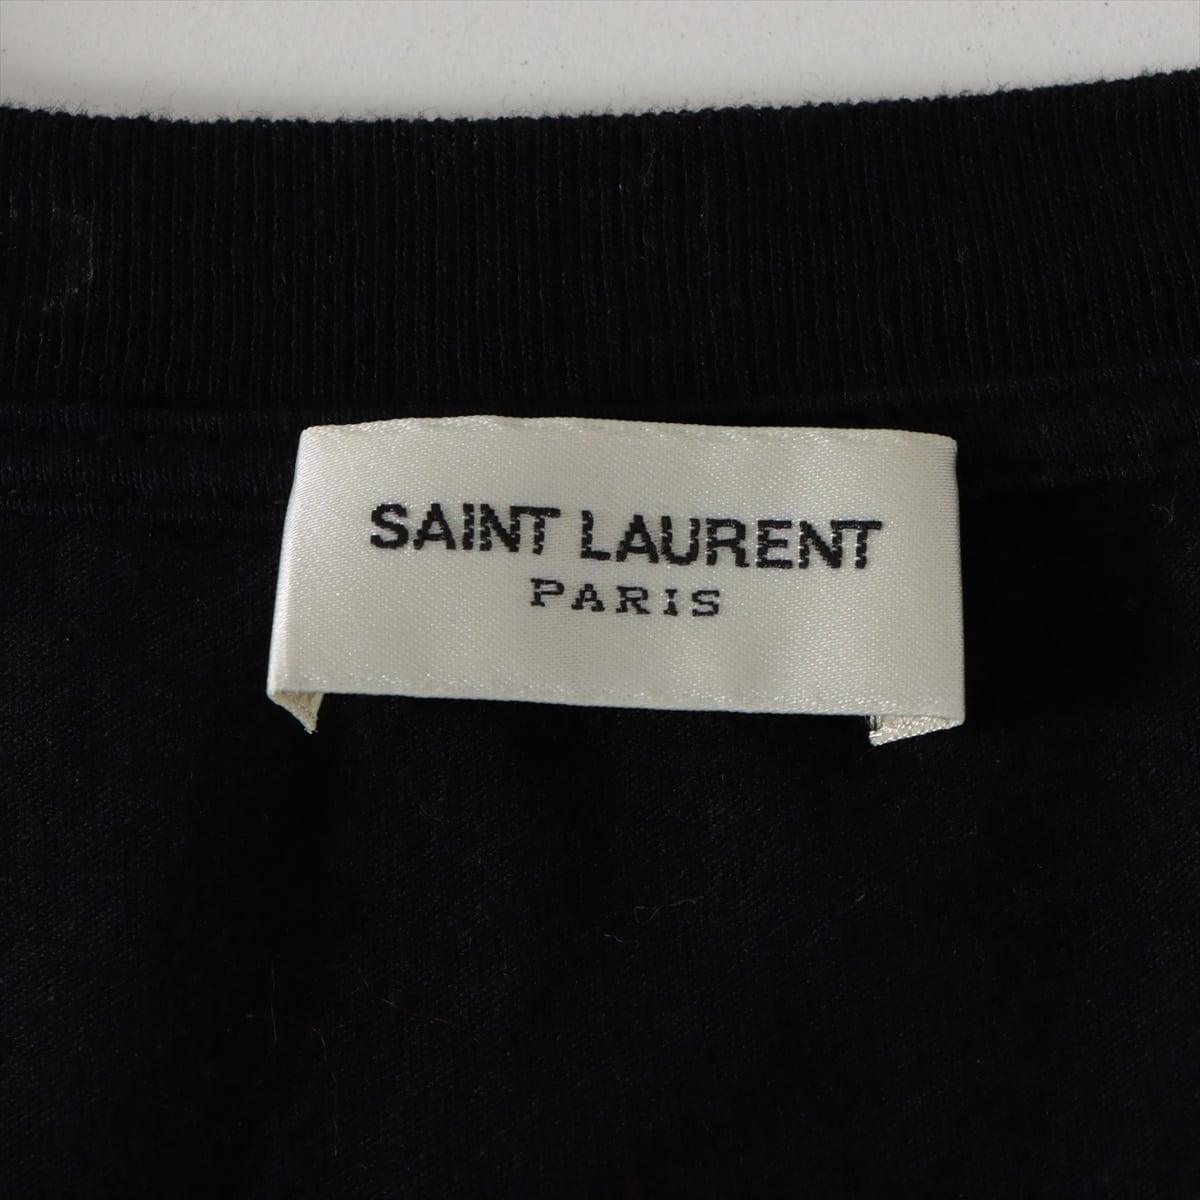 Saint Laurent Paris 16SS Cotton T-shirt M Men's Black  yeah baby  Studs 415983